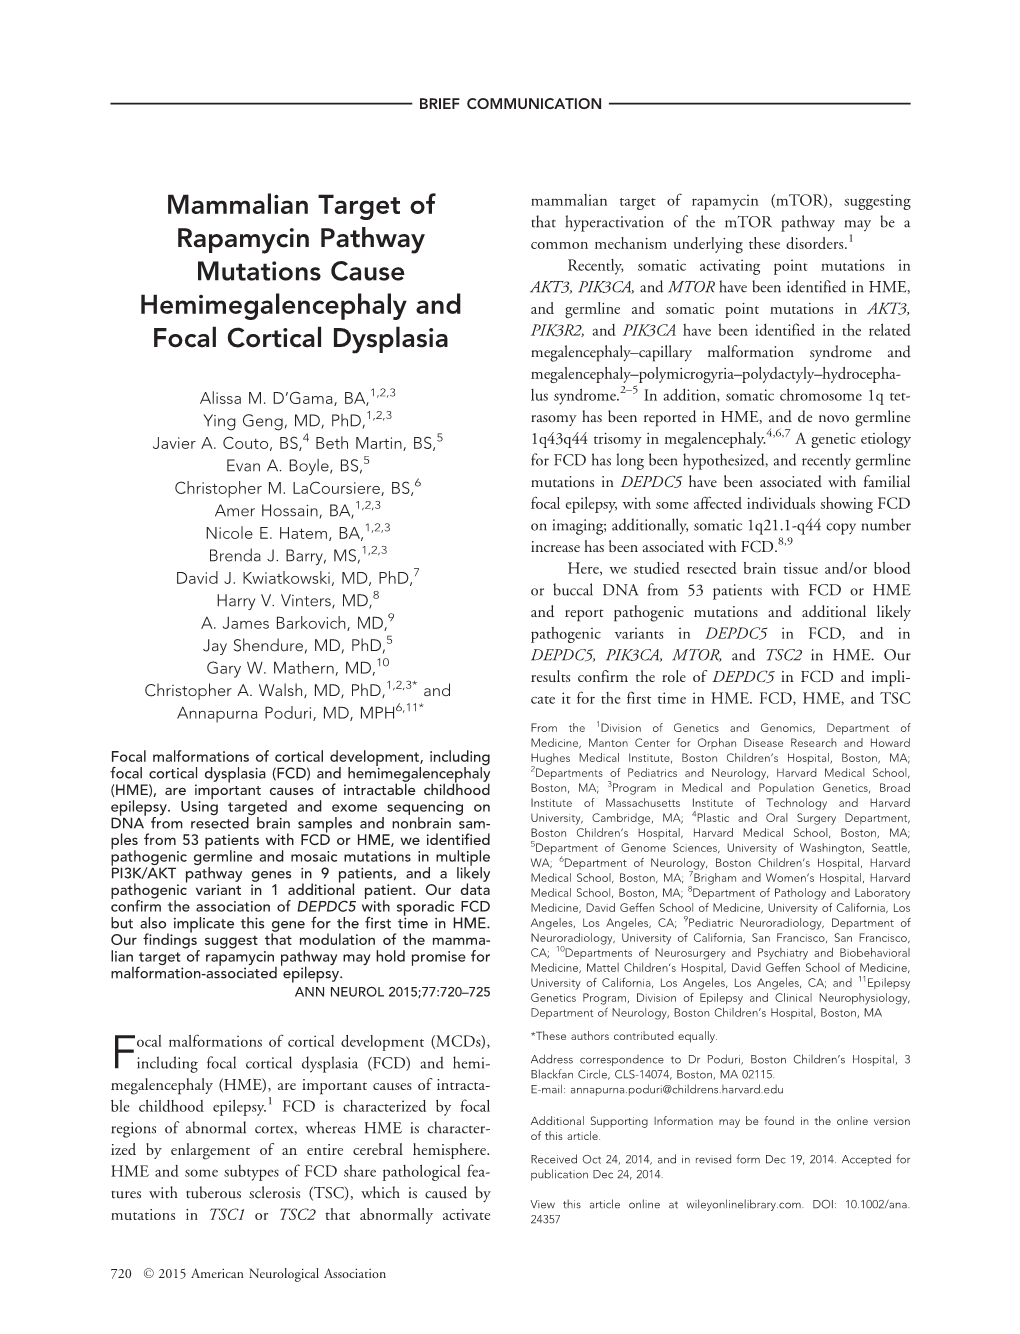 Mammalian Target of Rapamycin Pathway Mutations Cause